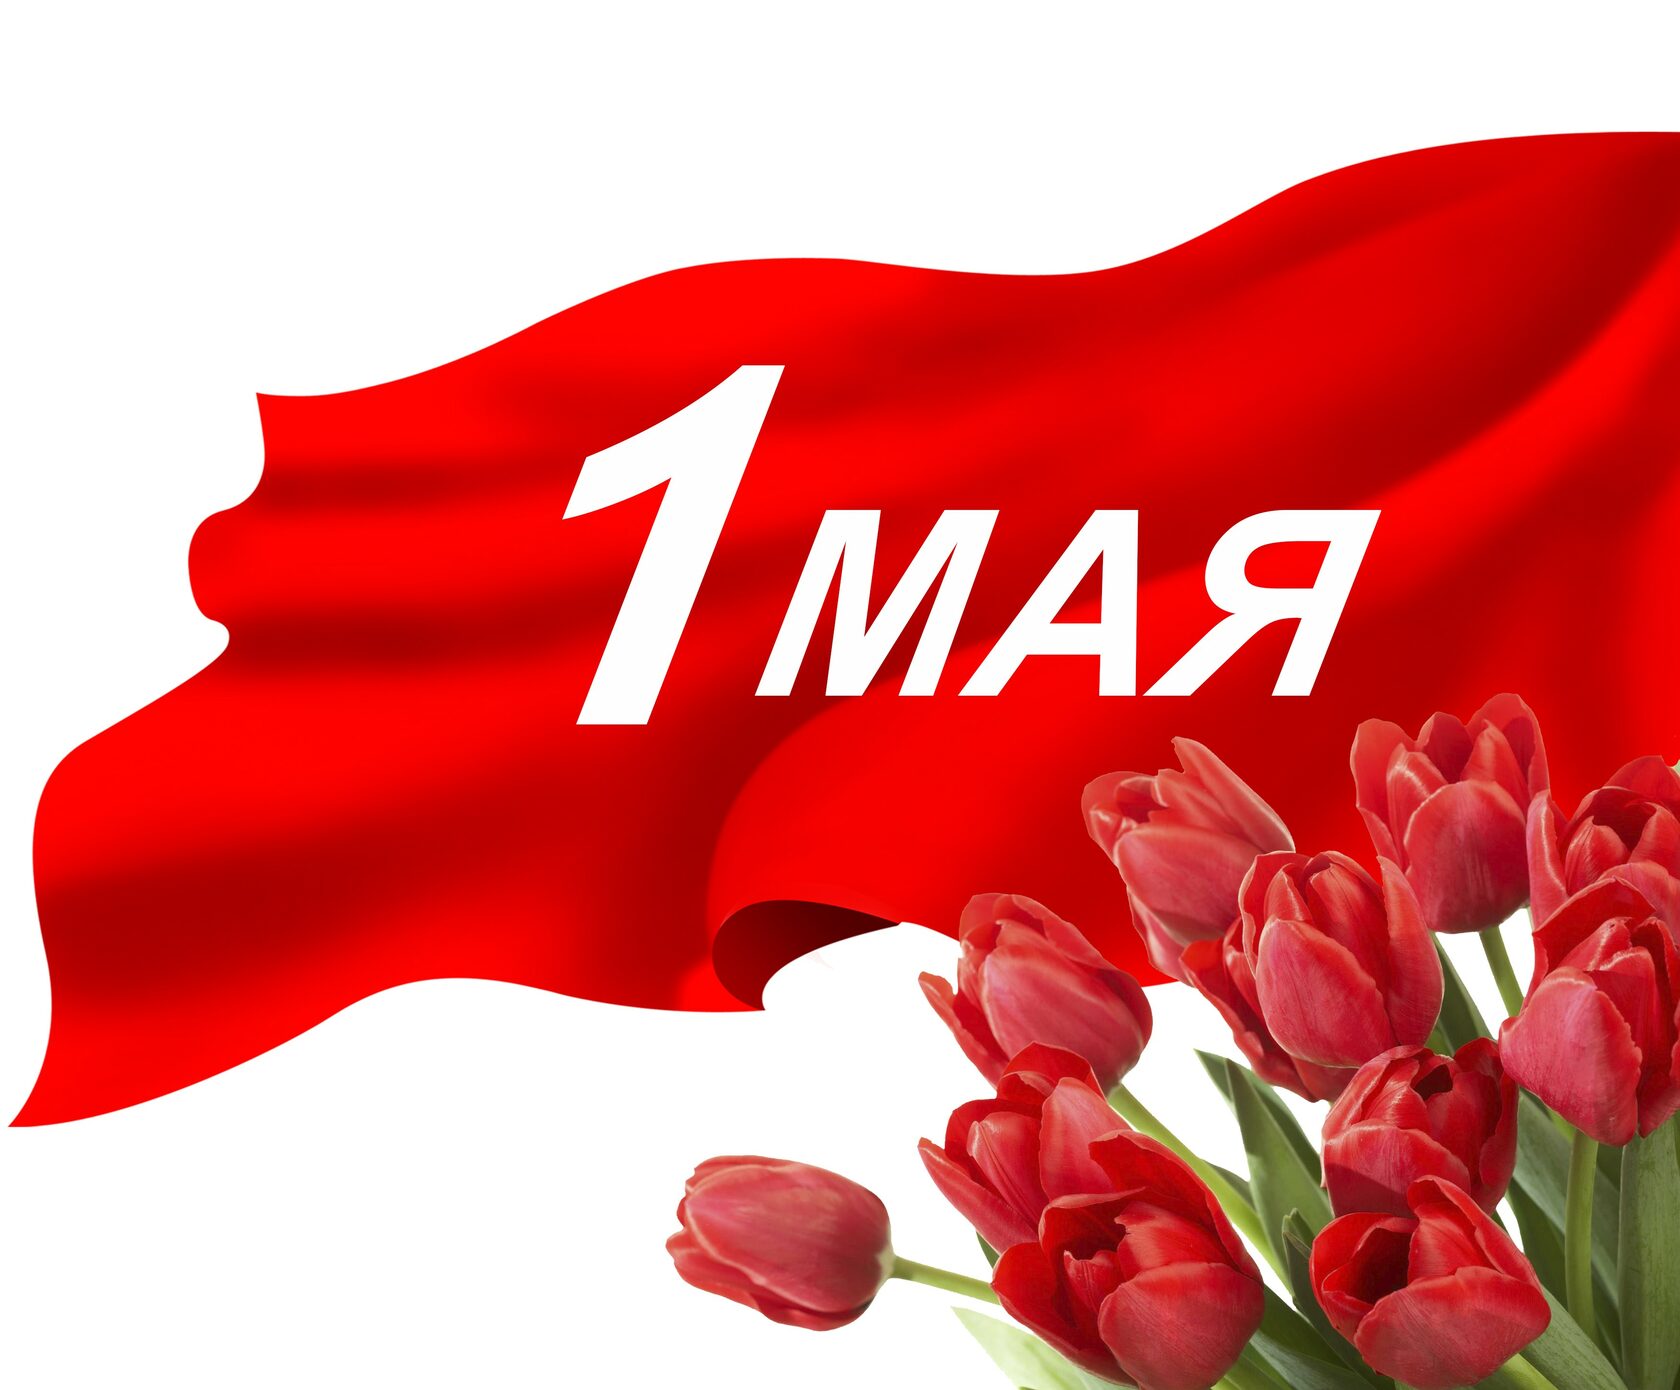 30 апреля нерабочий. 1 Мая. Праздник день весны и труда 1 мая в Москве в красный площади.